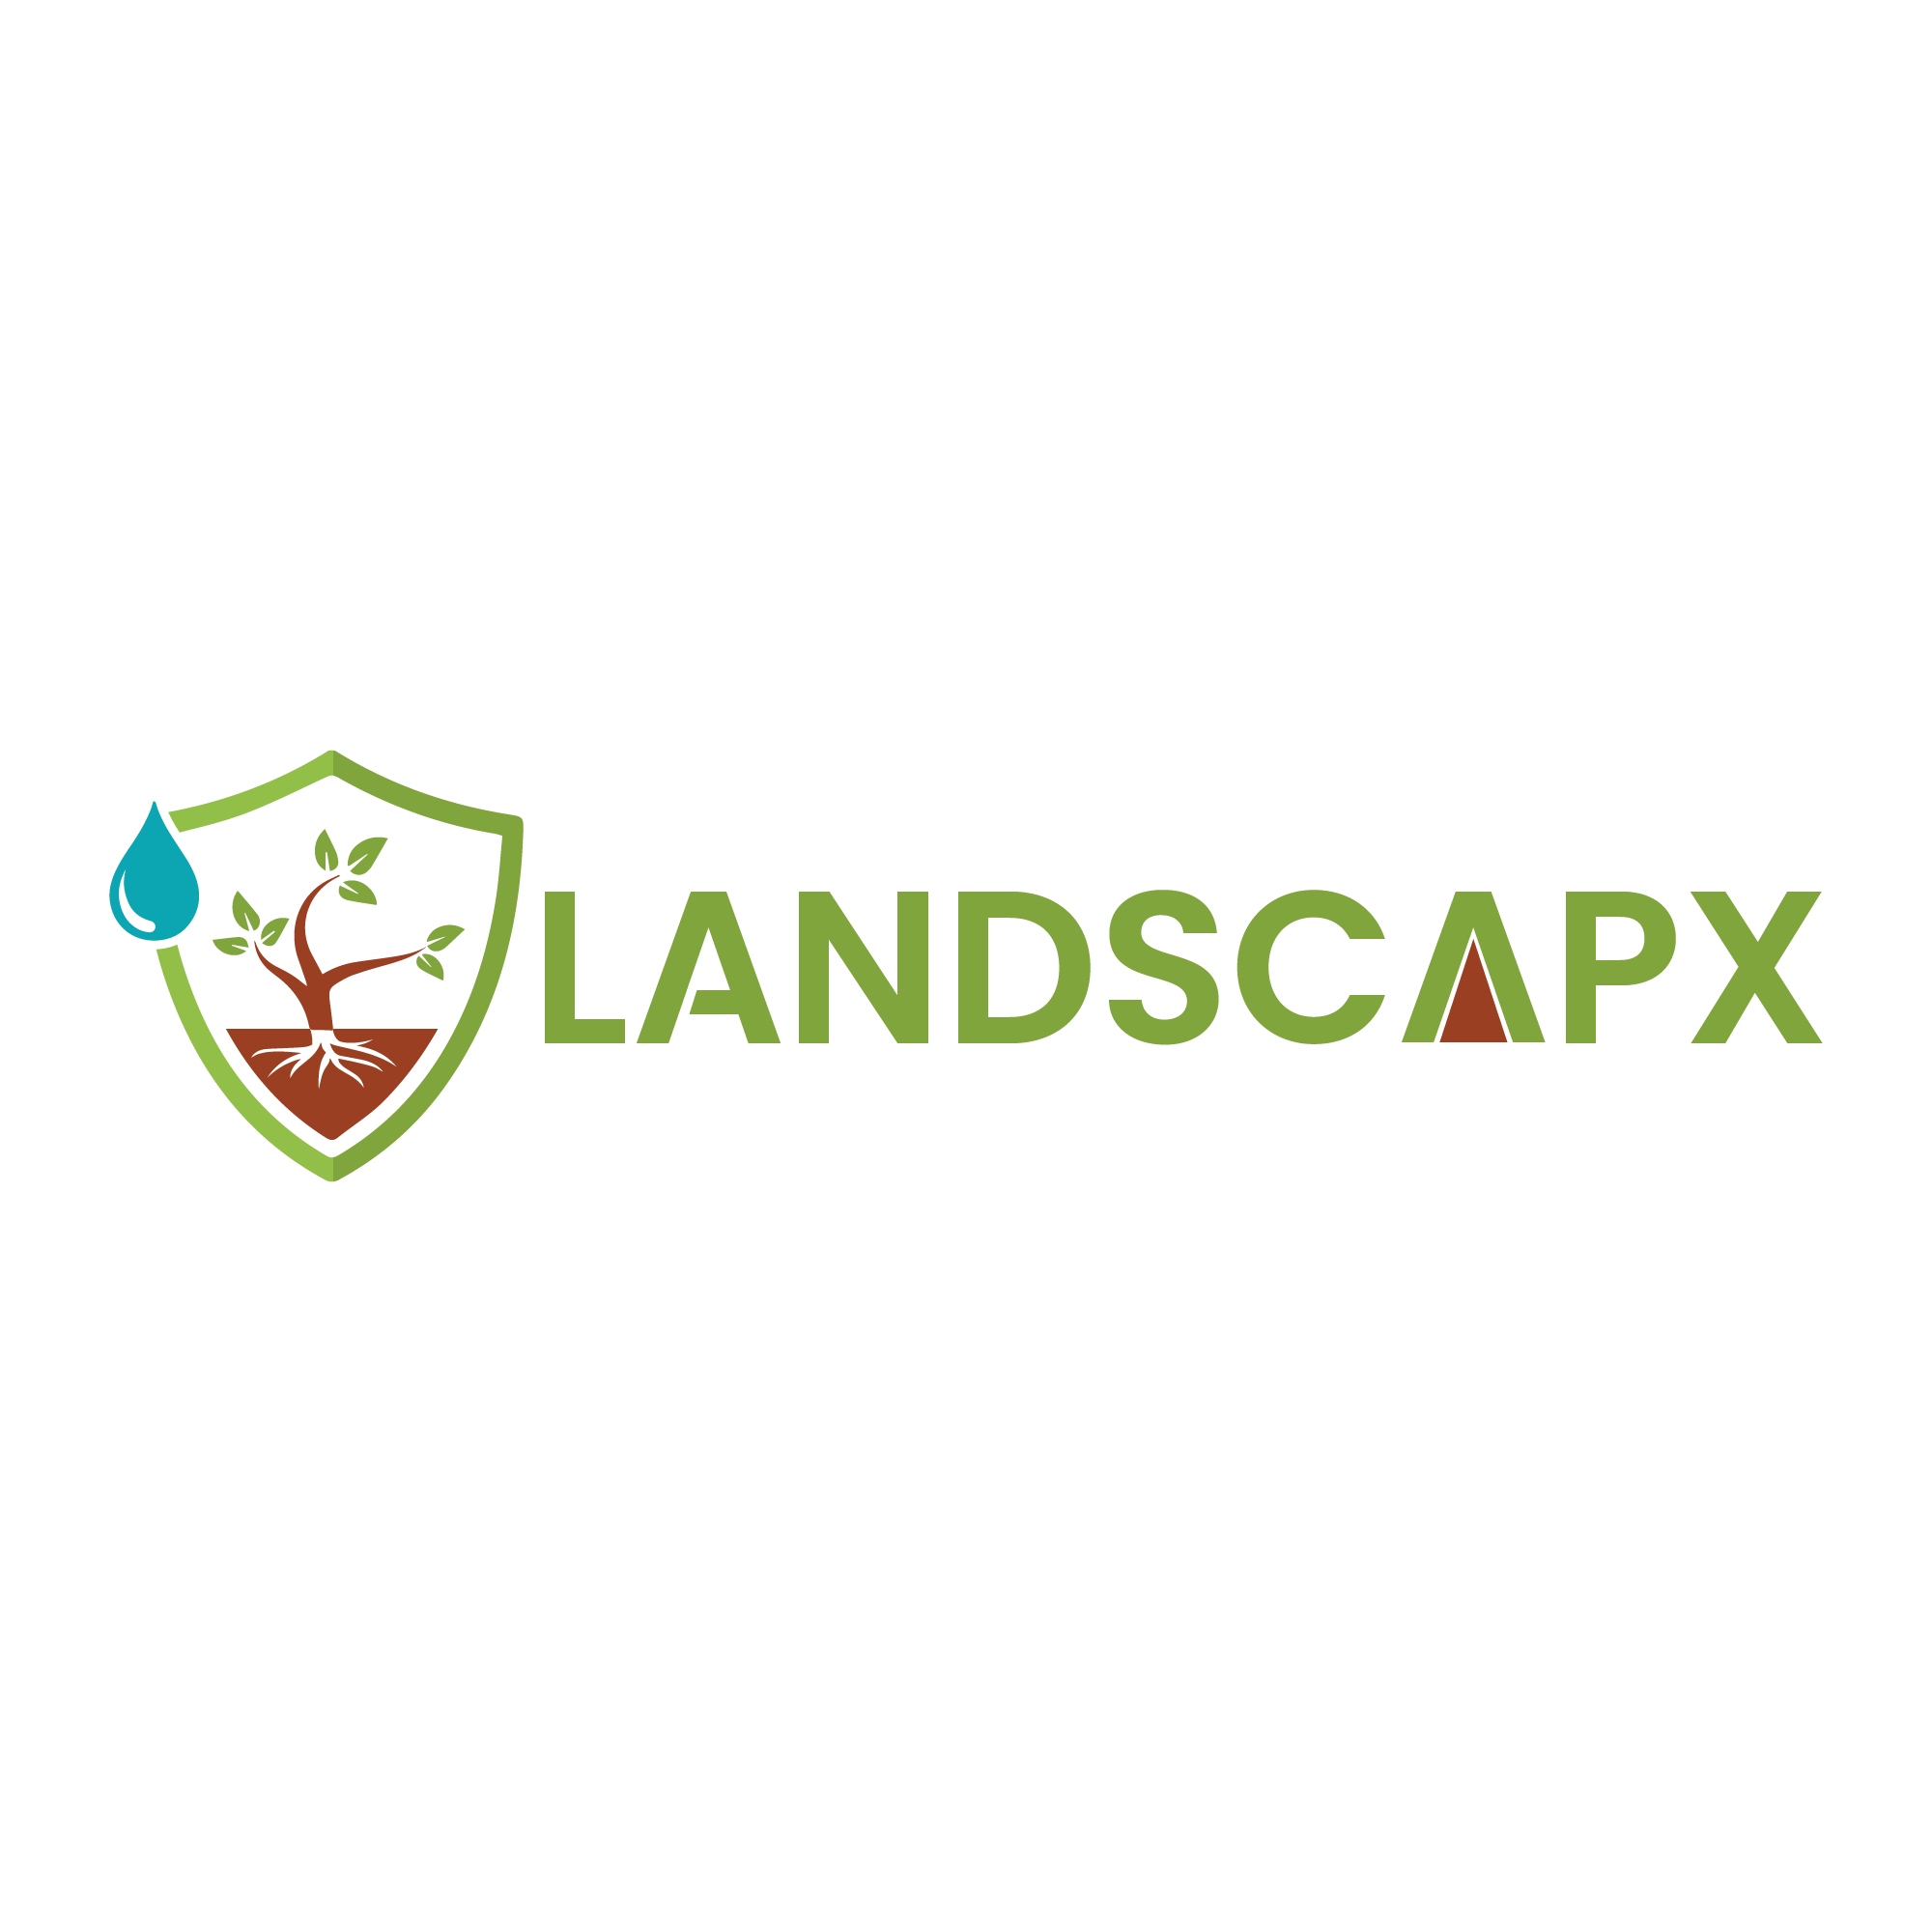 Landscapx Logo